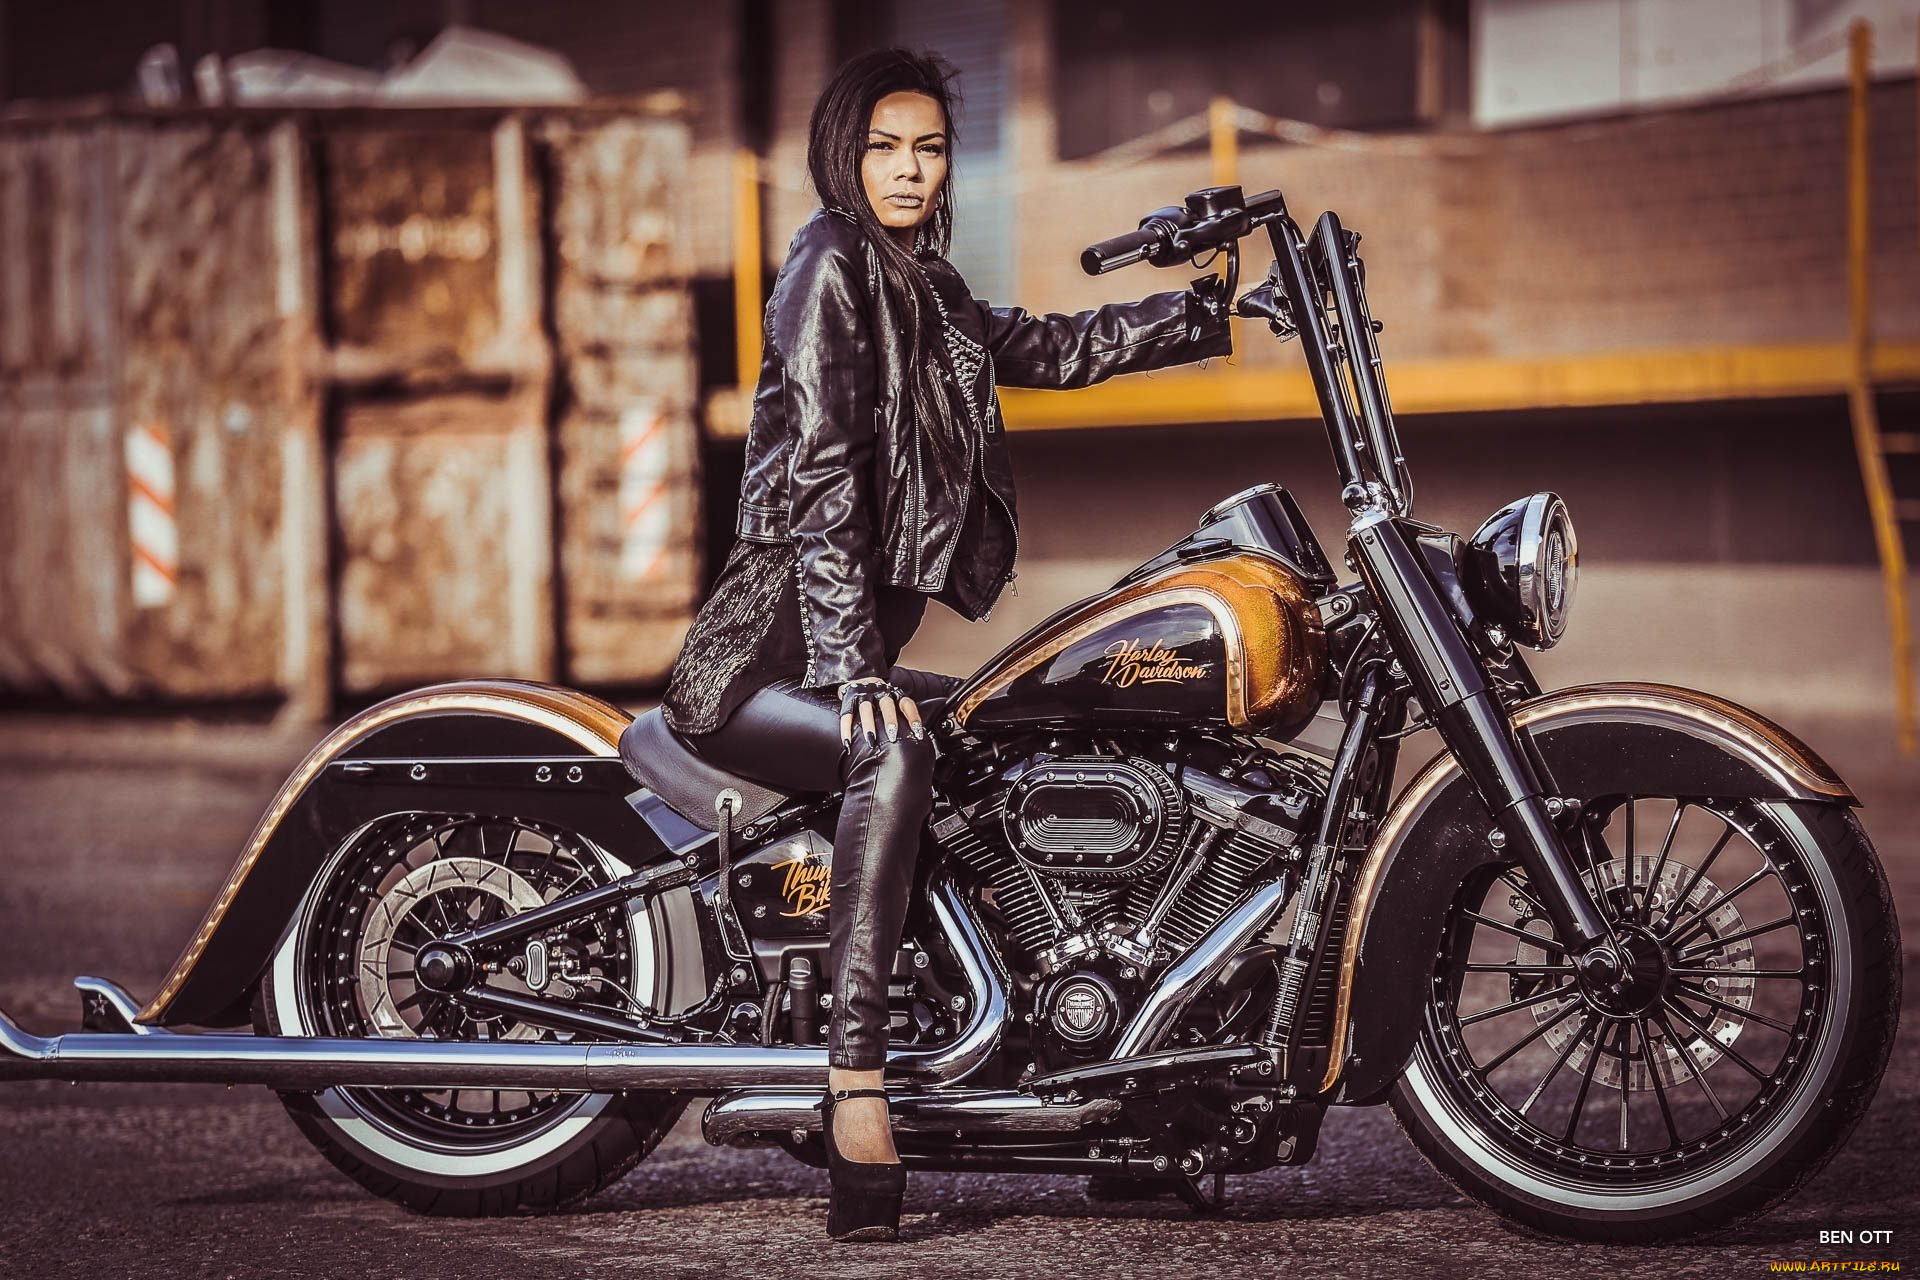 мотоциклы, мото, с, девушкой, custom, bike, chopper